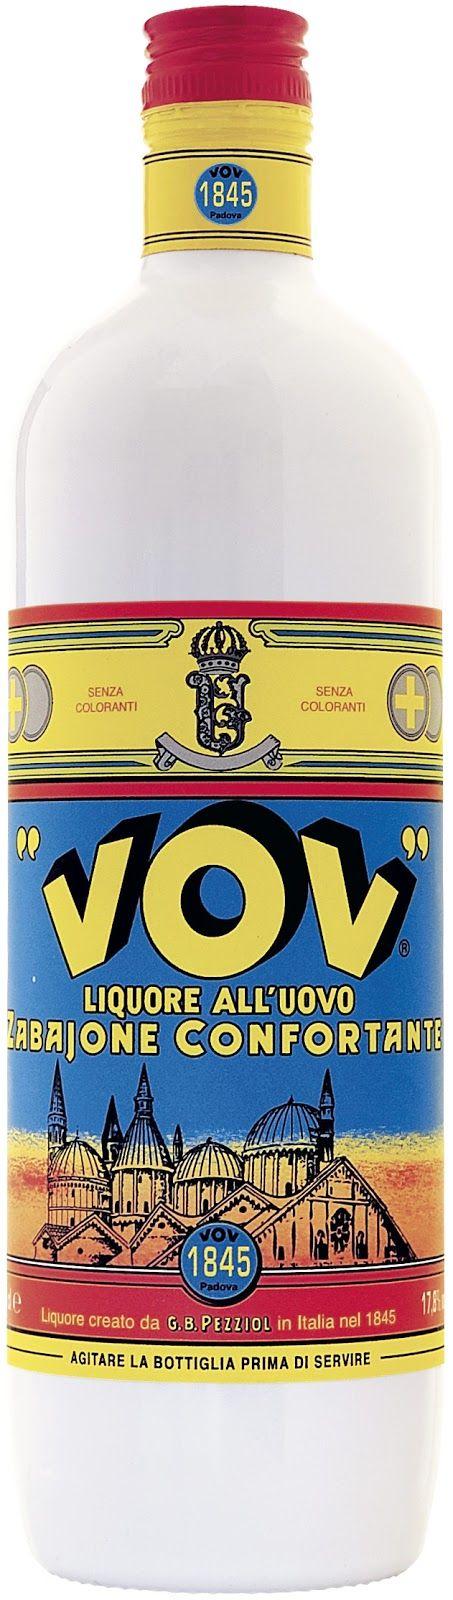 5 Creme de Licor ao Ovo - Vov O Vov é um creme de licor derivado de uma ideia genial de Gian Battista Pezziol em 1845.